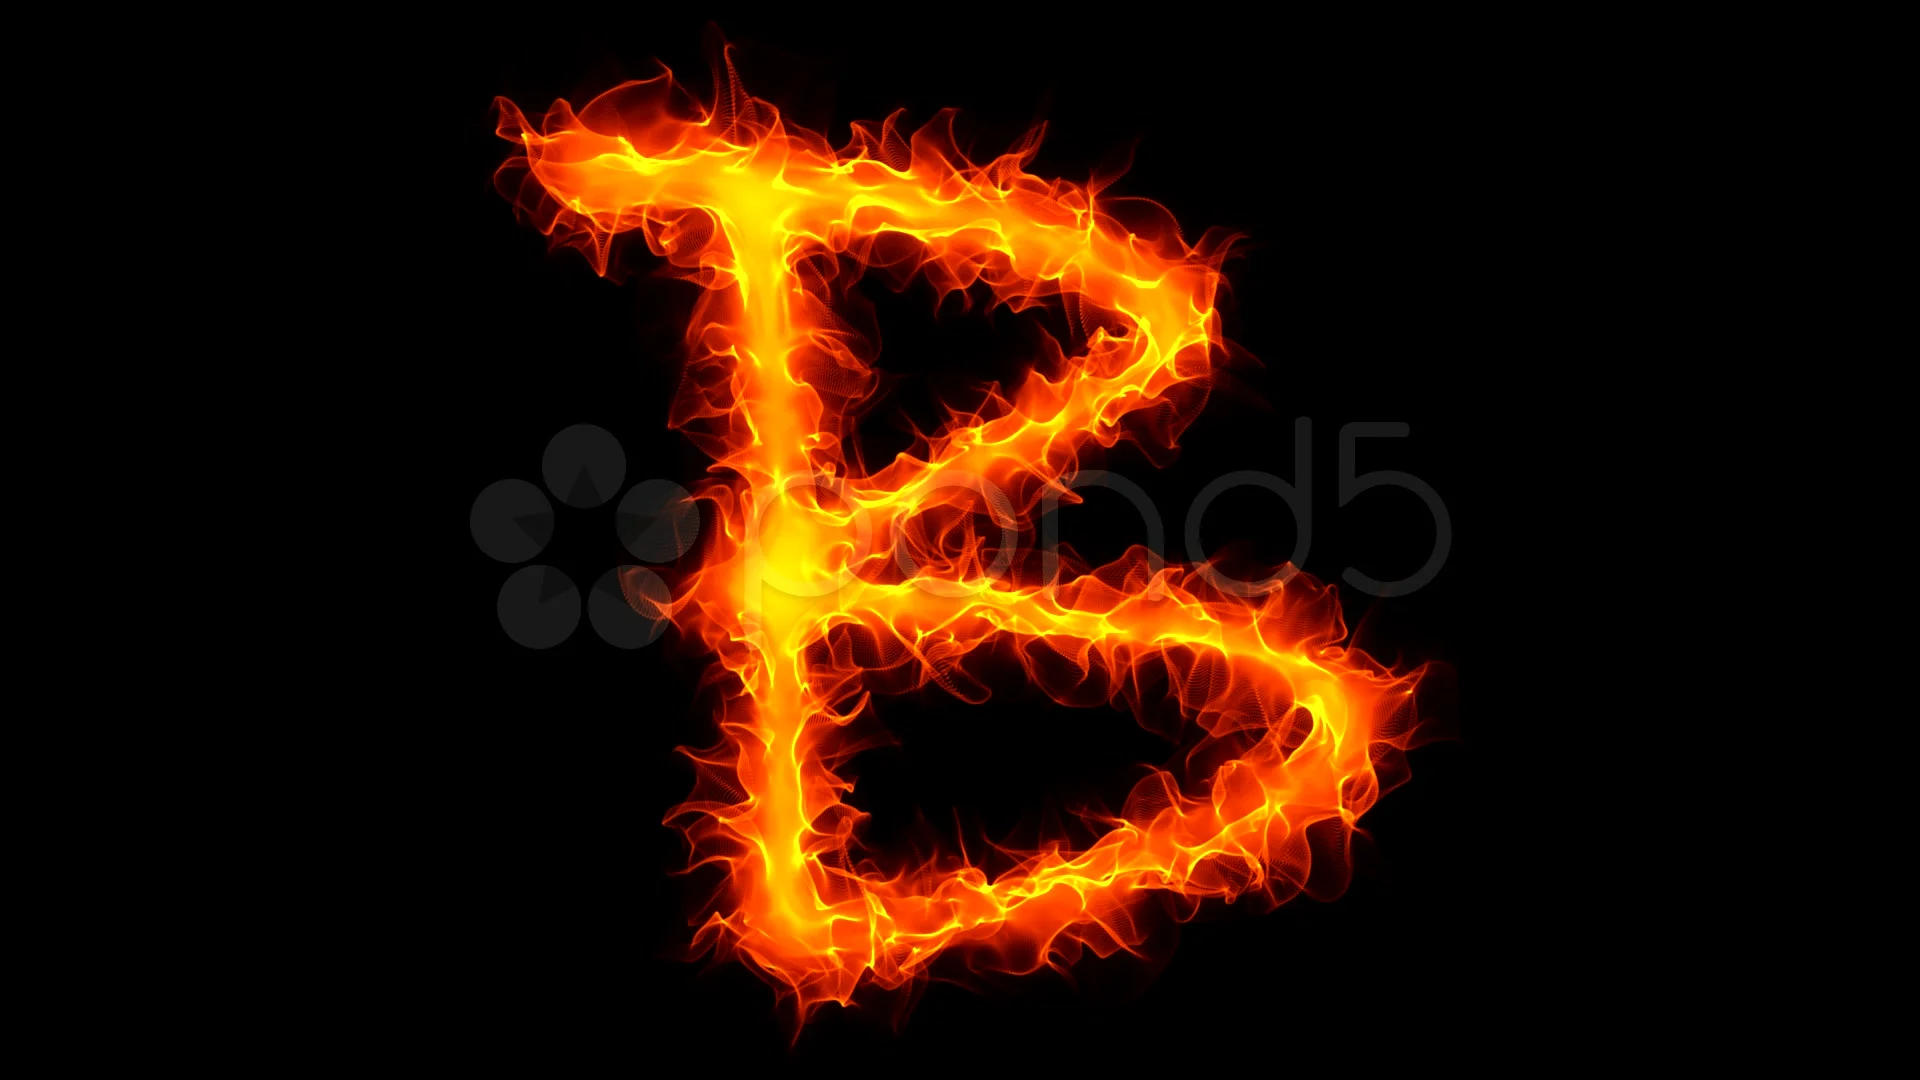 Fire Letter B Graffiti HD 4K Stock Footage 950888